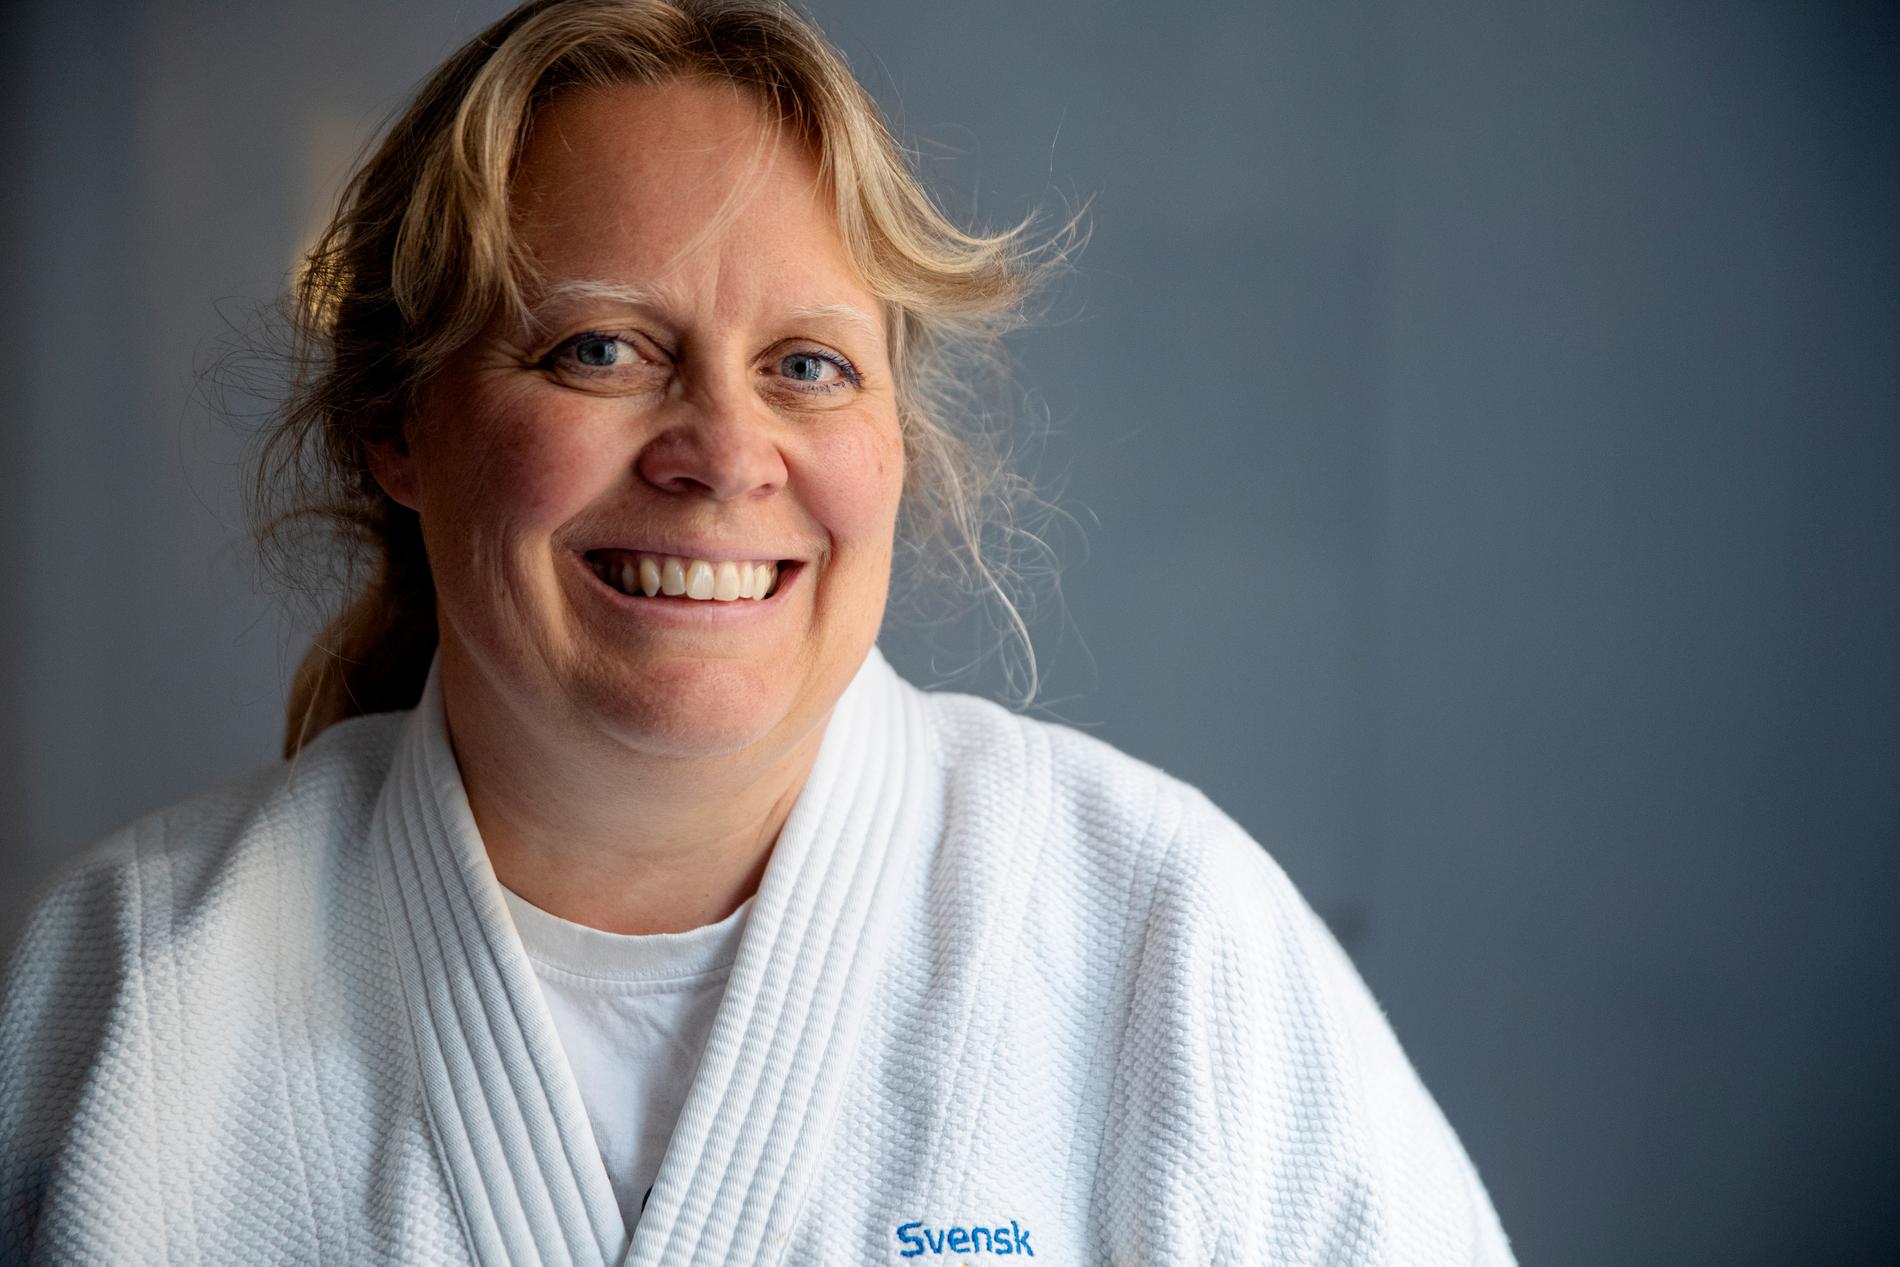  Man kan träna sig på att ramla på rätt sätt så man inte skadar sig när man väl faller säger Karin Strömqvist Bååthe. Falltekniken kommer från judon.